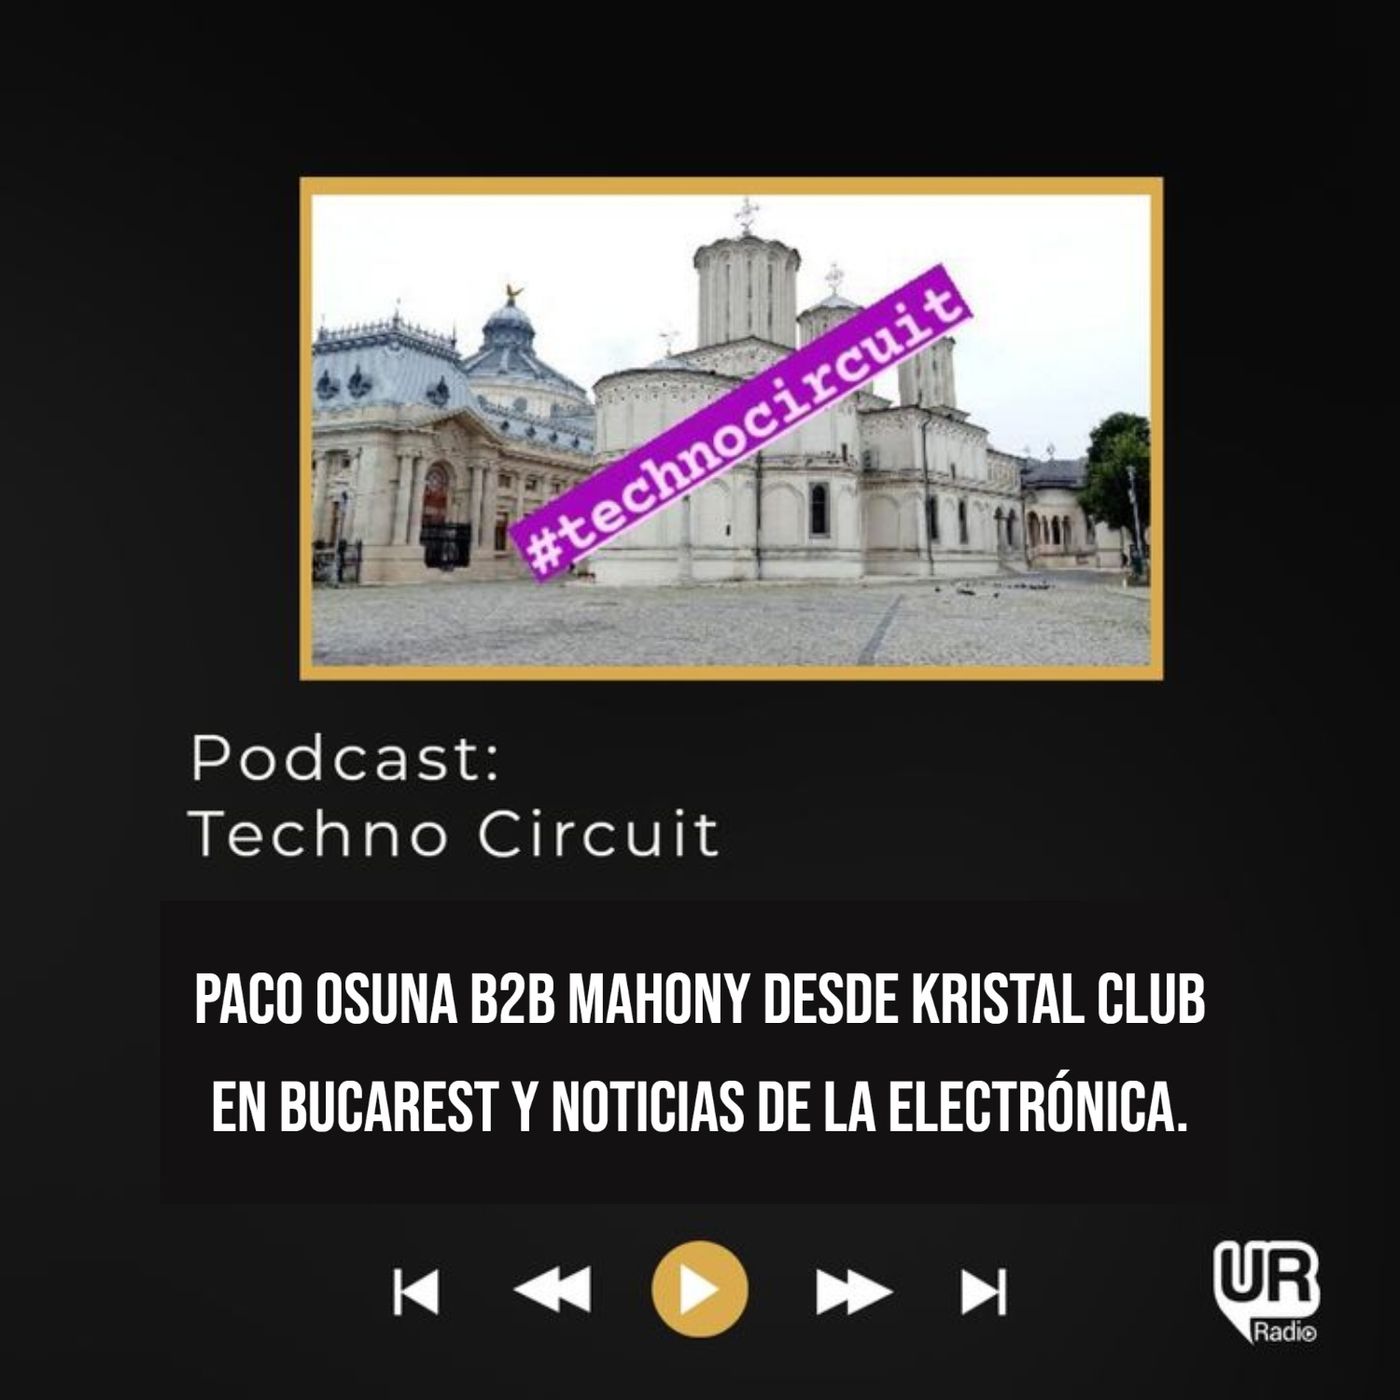 Paco Osuna b2b Mahony desde Kristal Club en Bucarest y noticias de la electrónica.